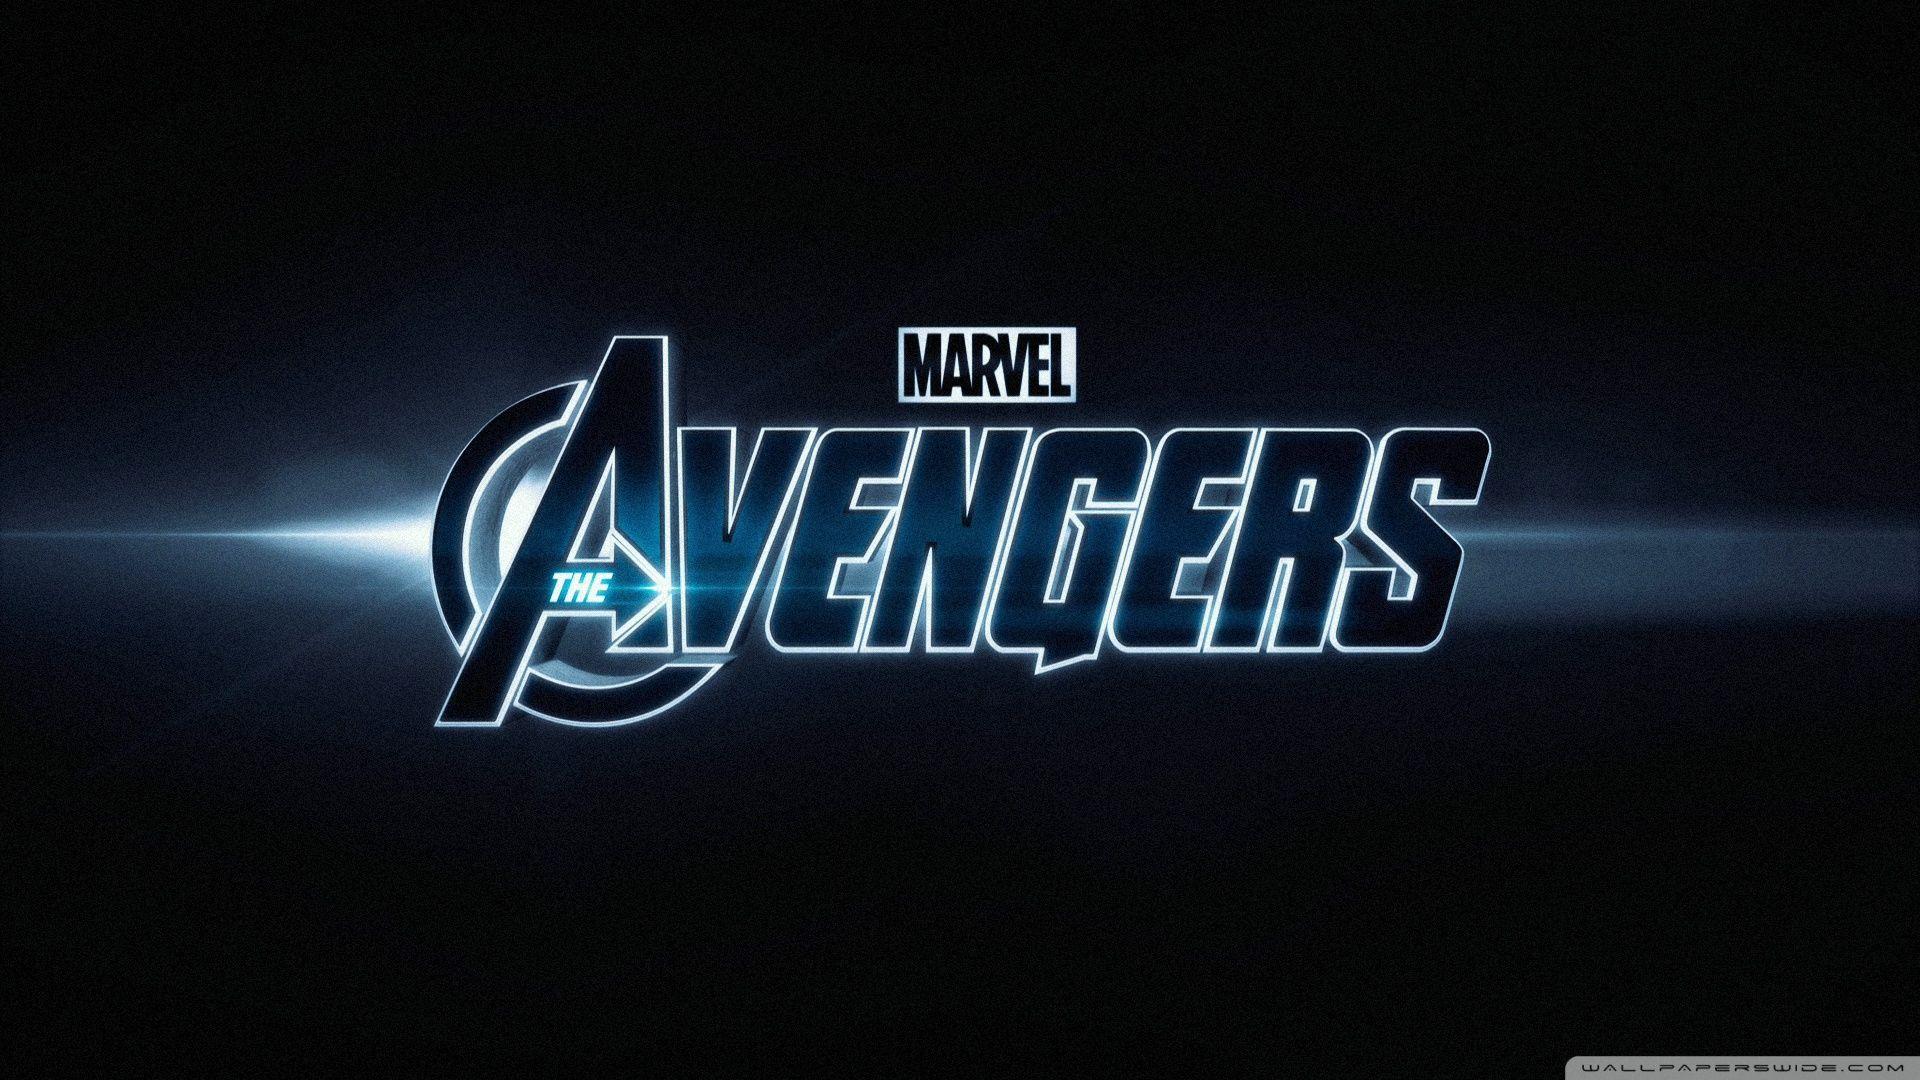 The Avengers Marvel (2012) ❤ 4K HD Desktop Wallpaper for 4K Ultra